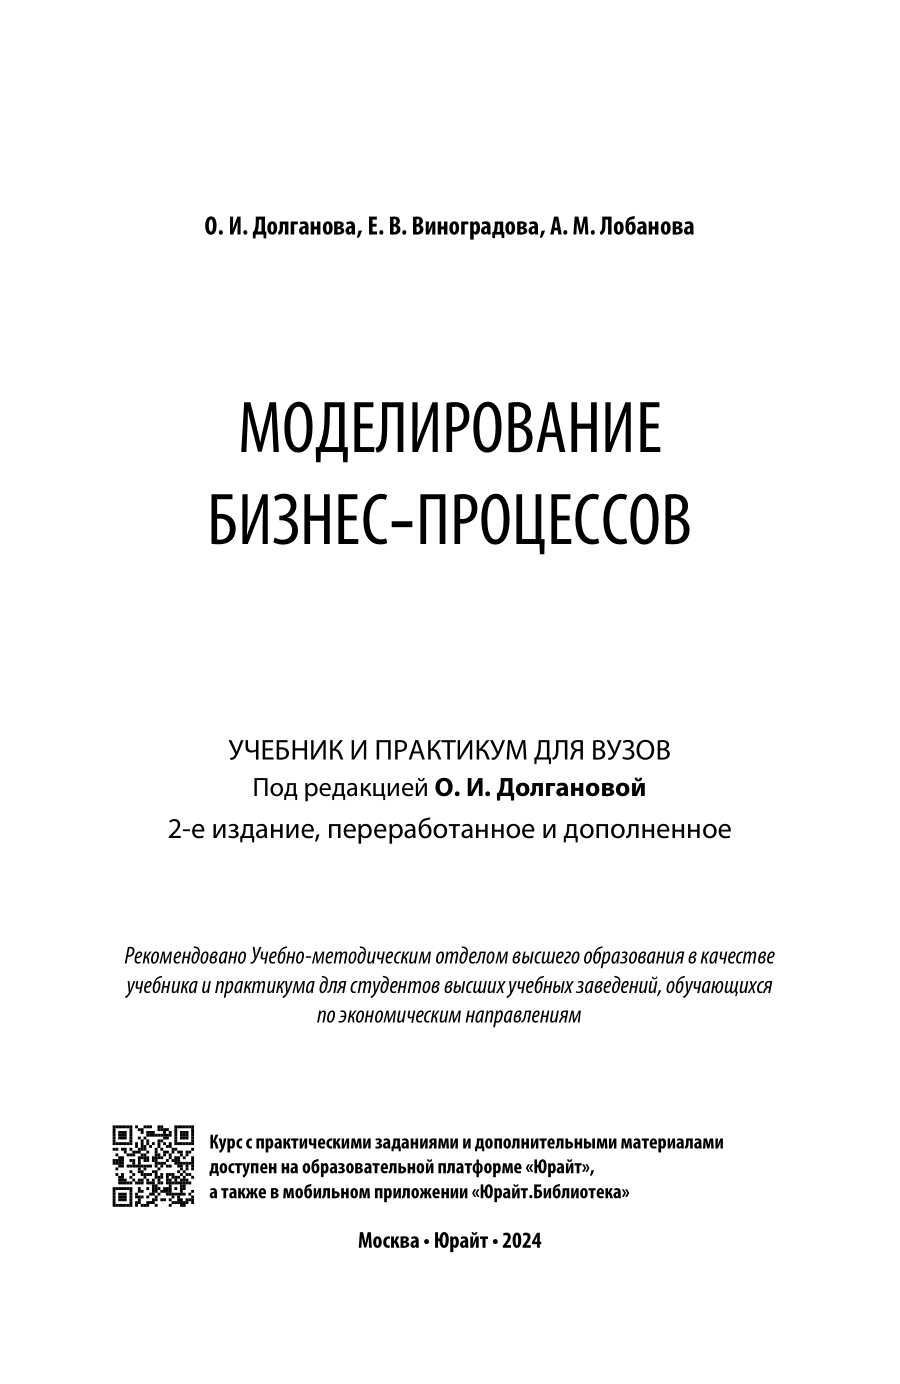 Моделирование бизнес-процессов 2-е изд., пер. и доп. Учебник и практикум для вузов - фото №2